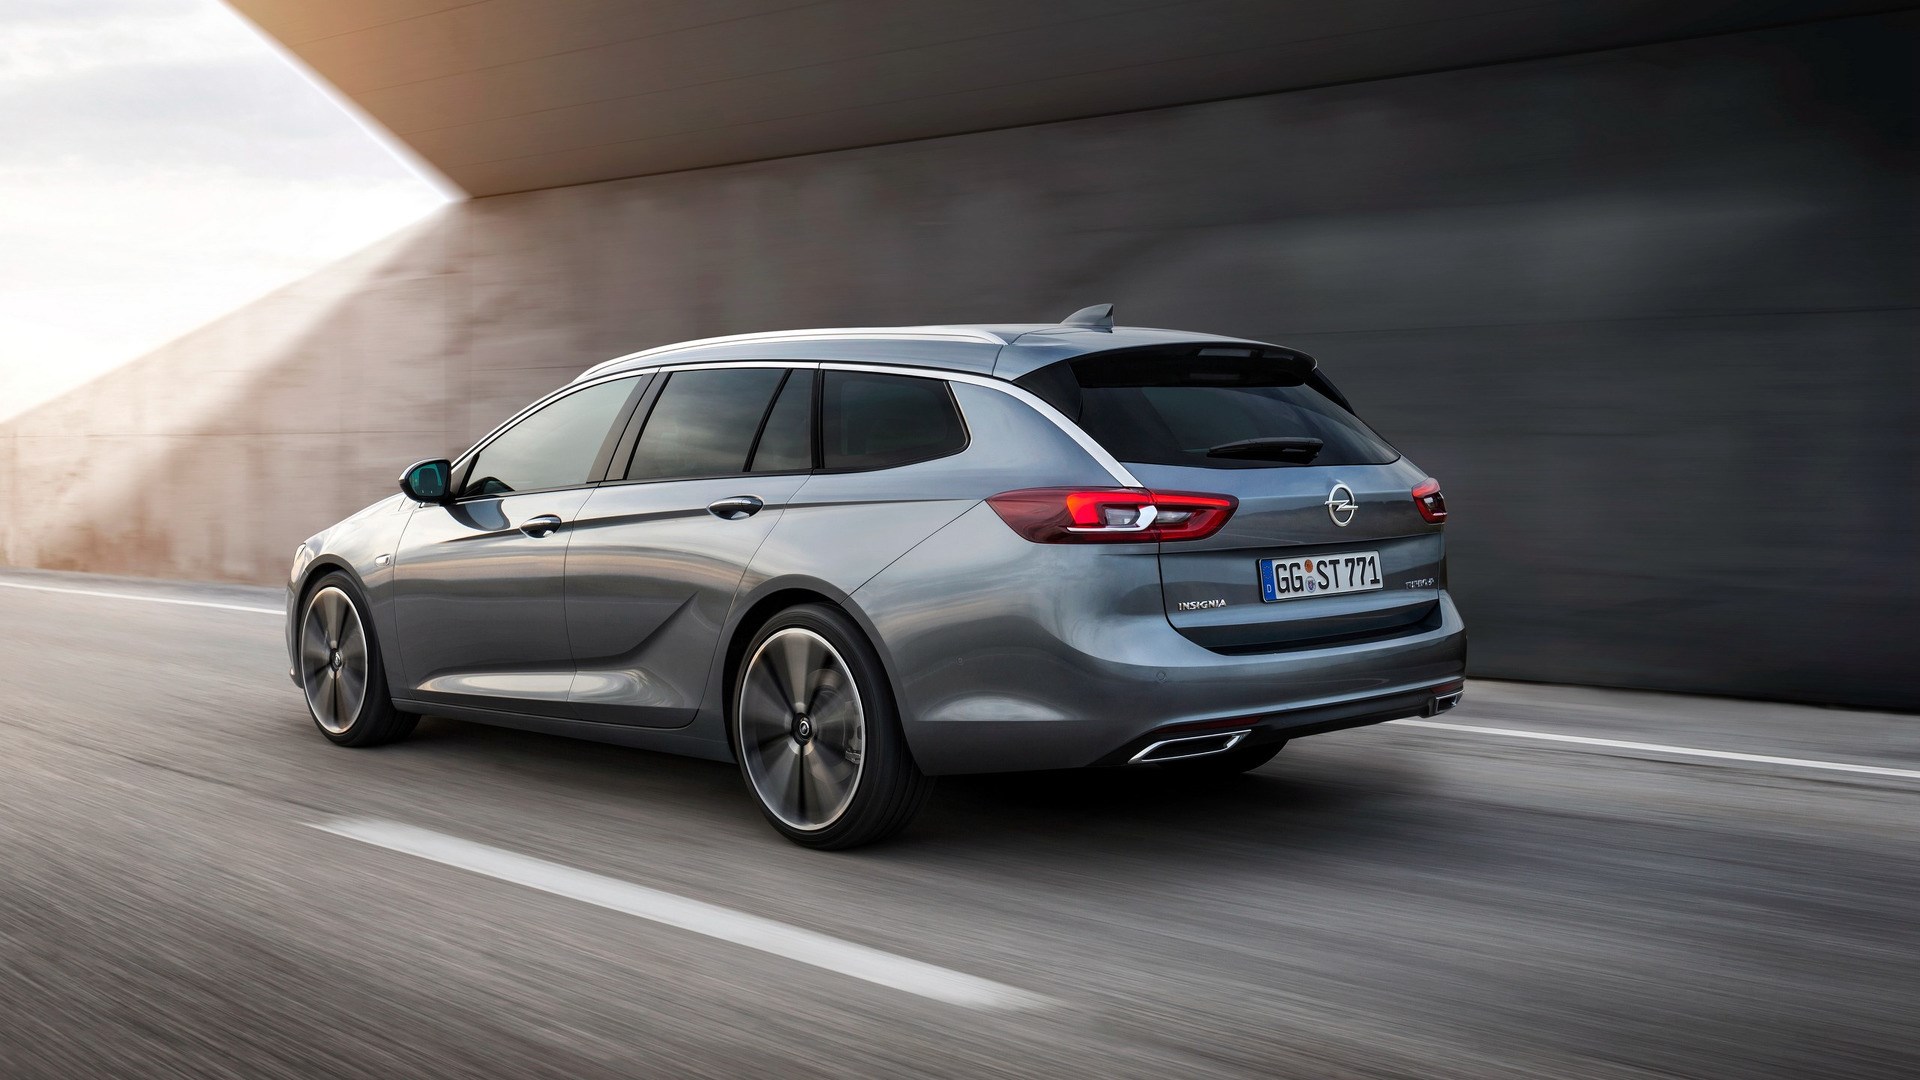 Opel Insignia üretimi bu yıl içerisinde sonlandırılacak